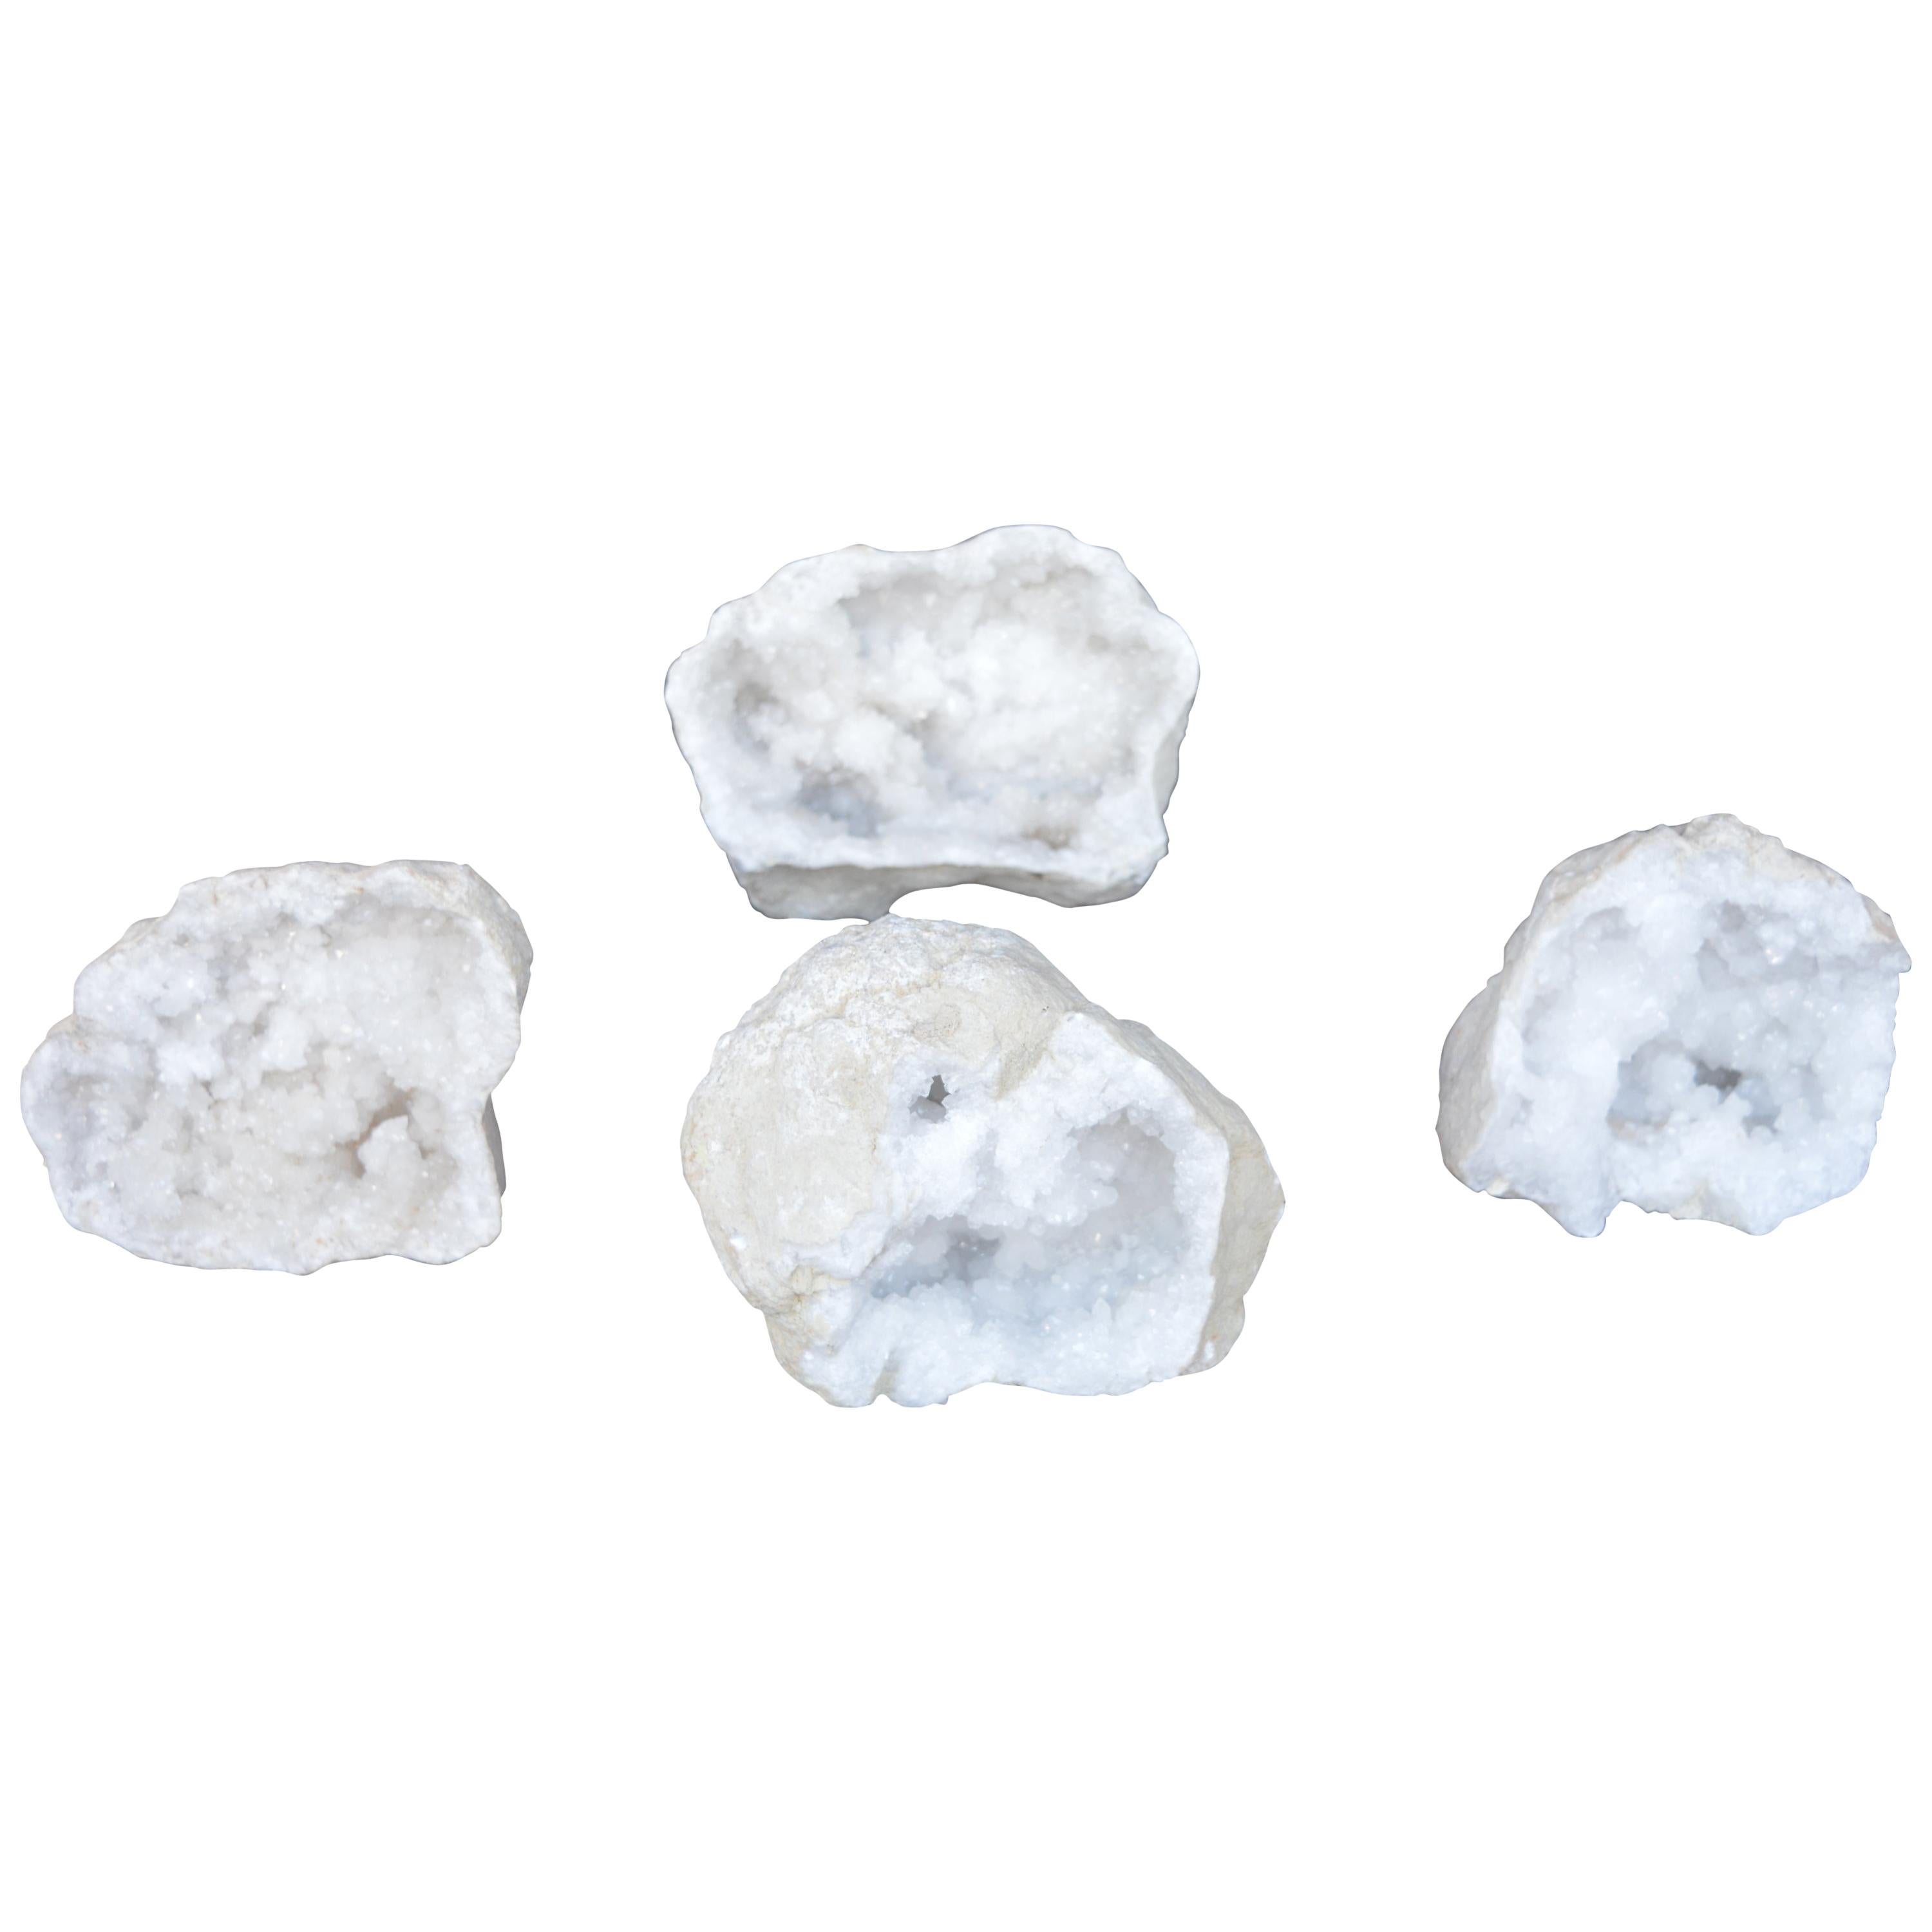 Set of Four Quartz Geode Specimens For Sale